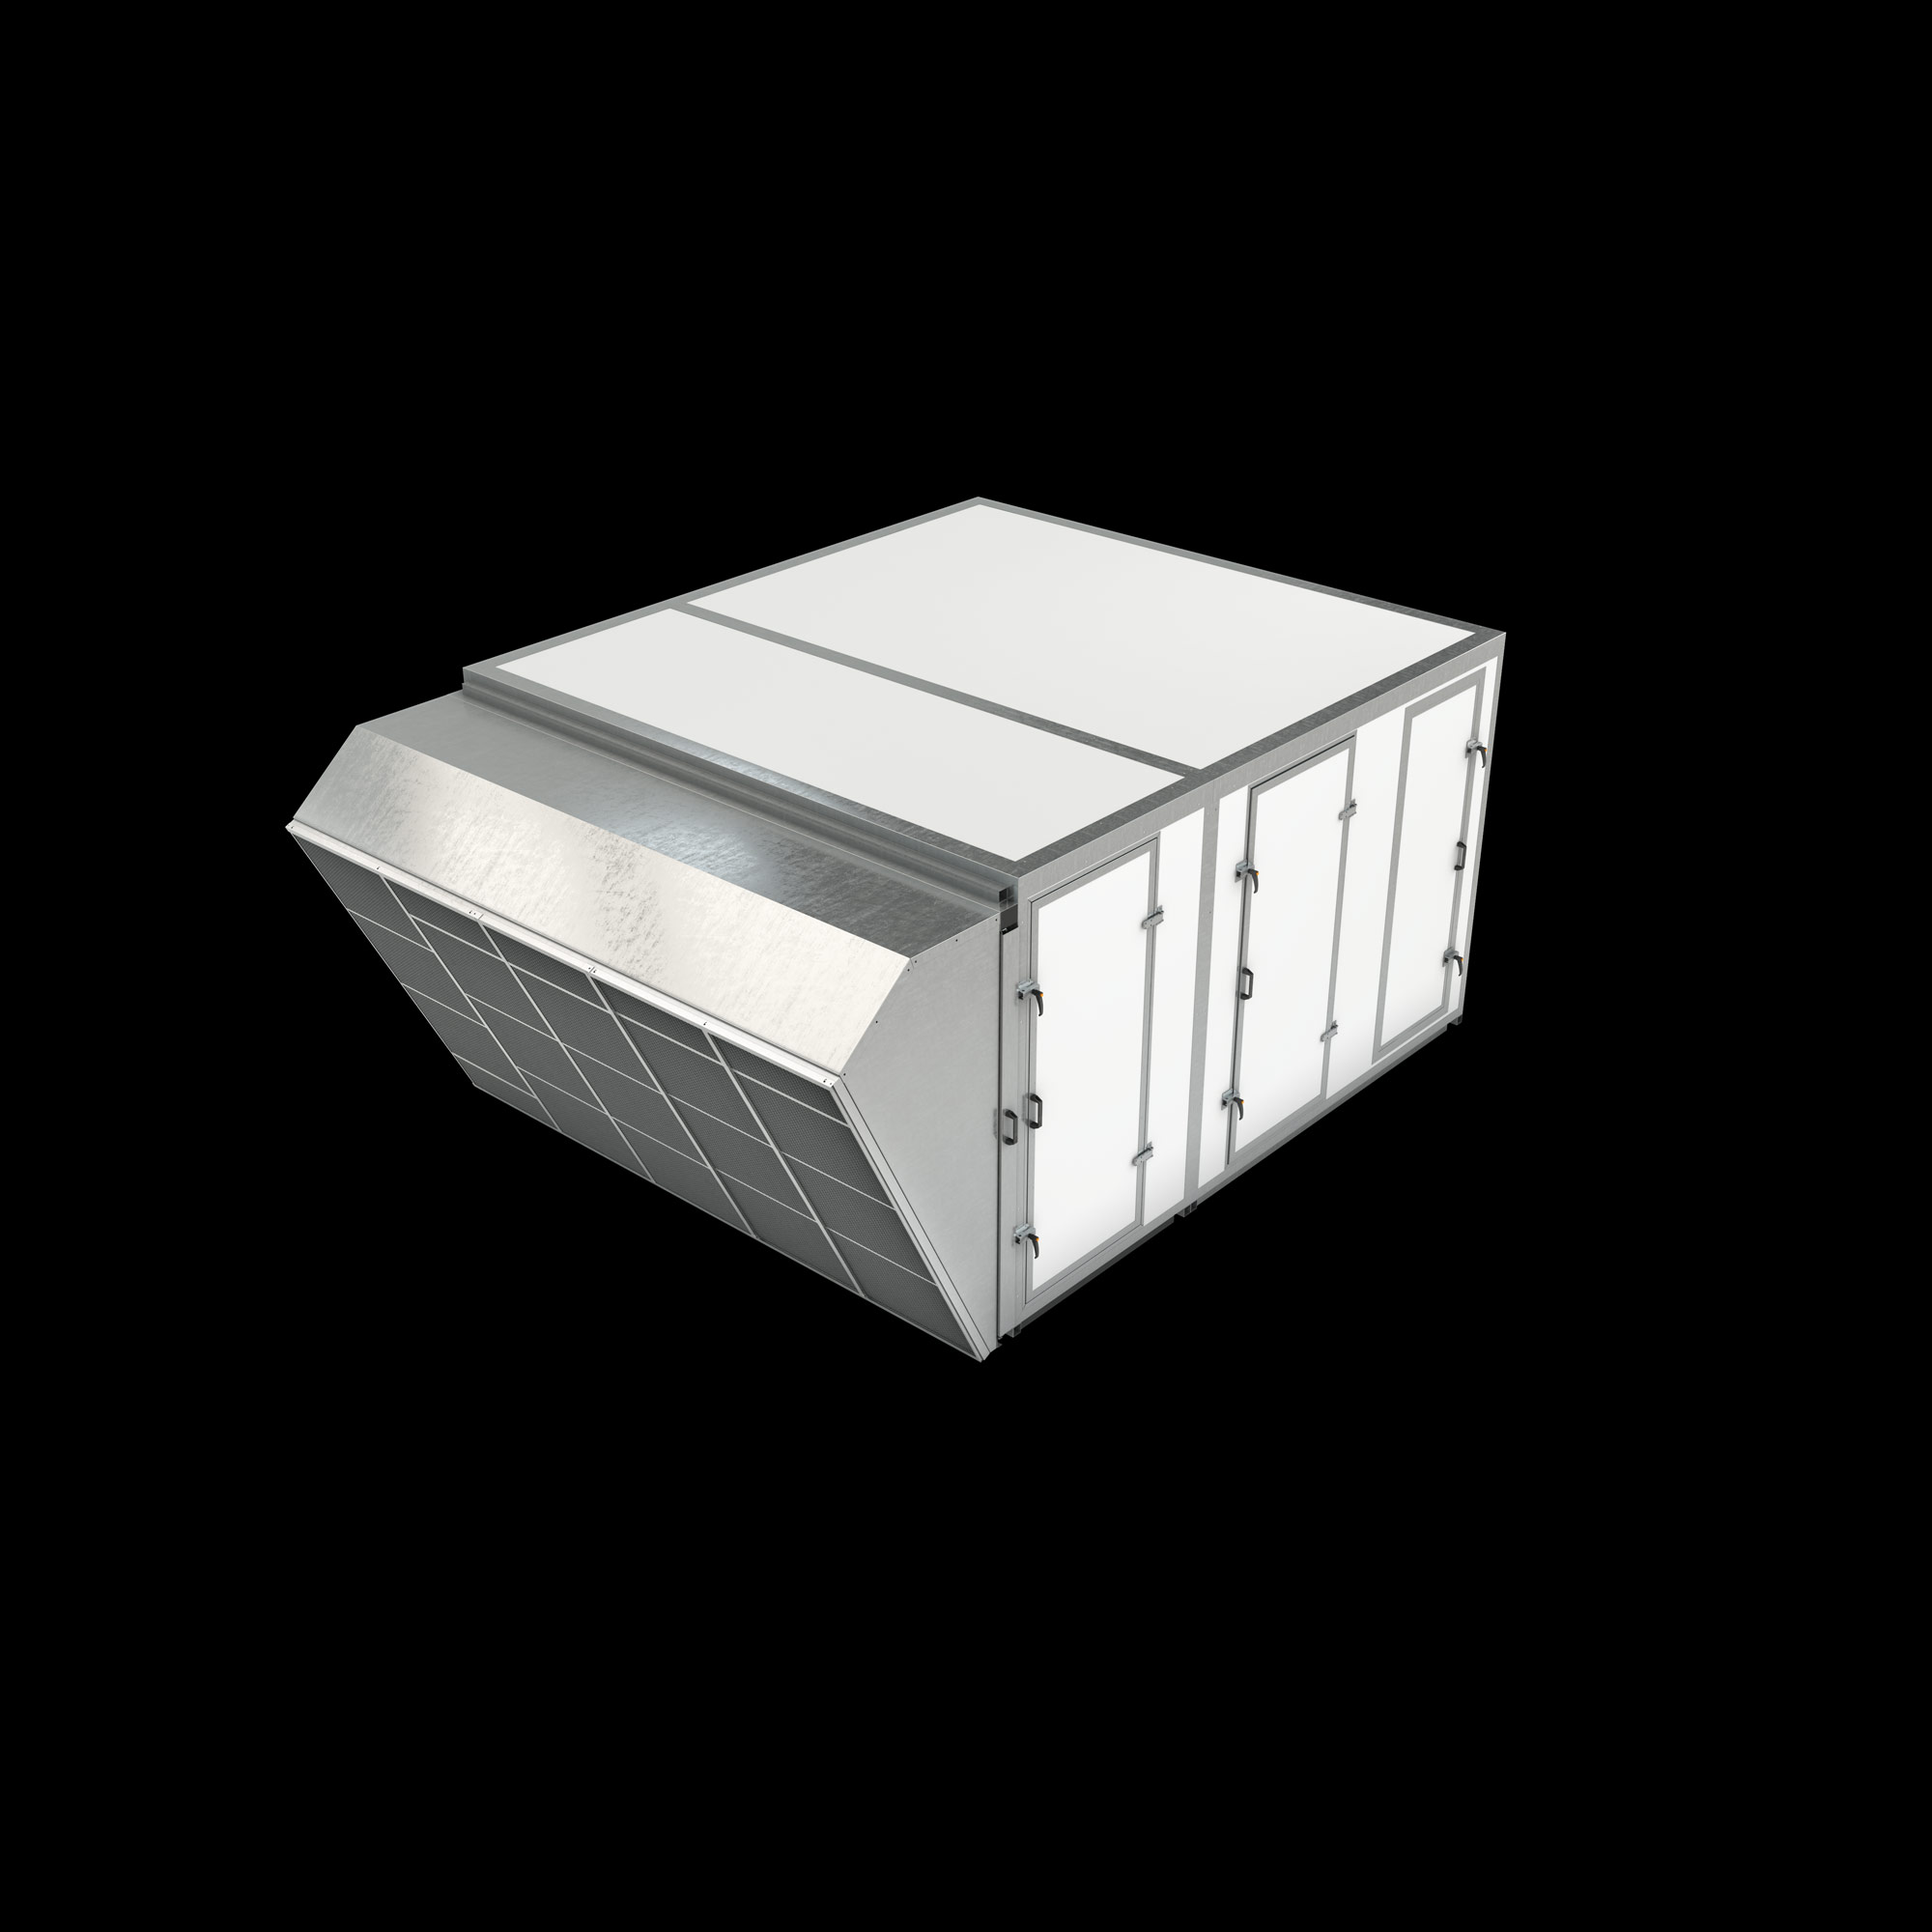 Visuel d'illustration technique 3D d'un bloc filtrant pour un bâtiment industriel destiné à l'élevage